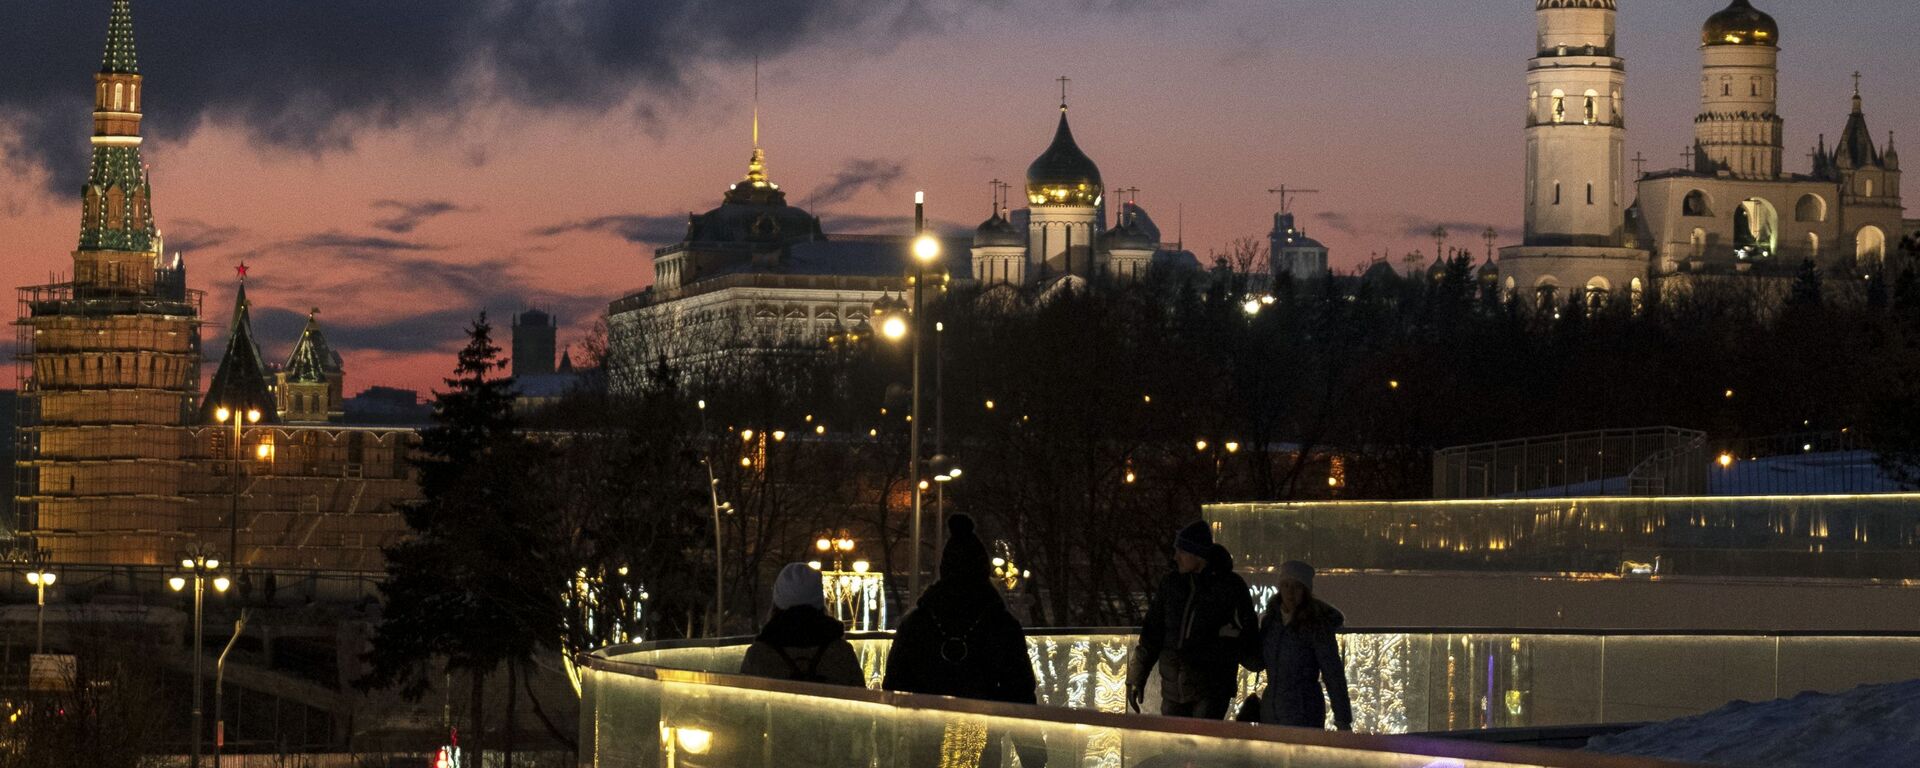 مدينة موسكو في فصل الشتاء 2019 - حديقة زارياديه - سبوتنيك عربي, 1920, 06.12.2021